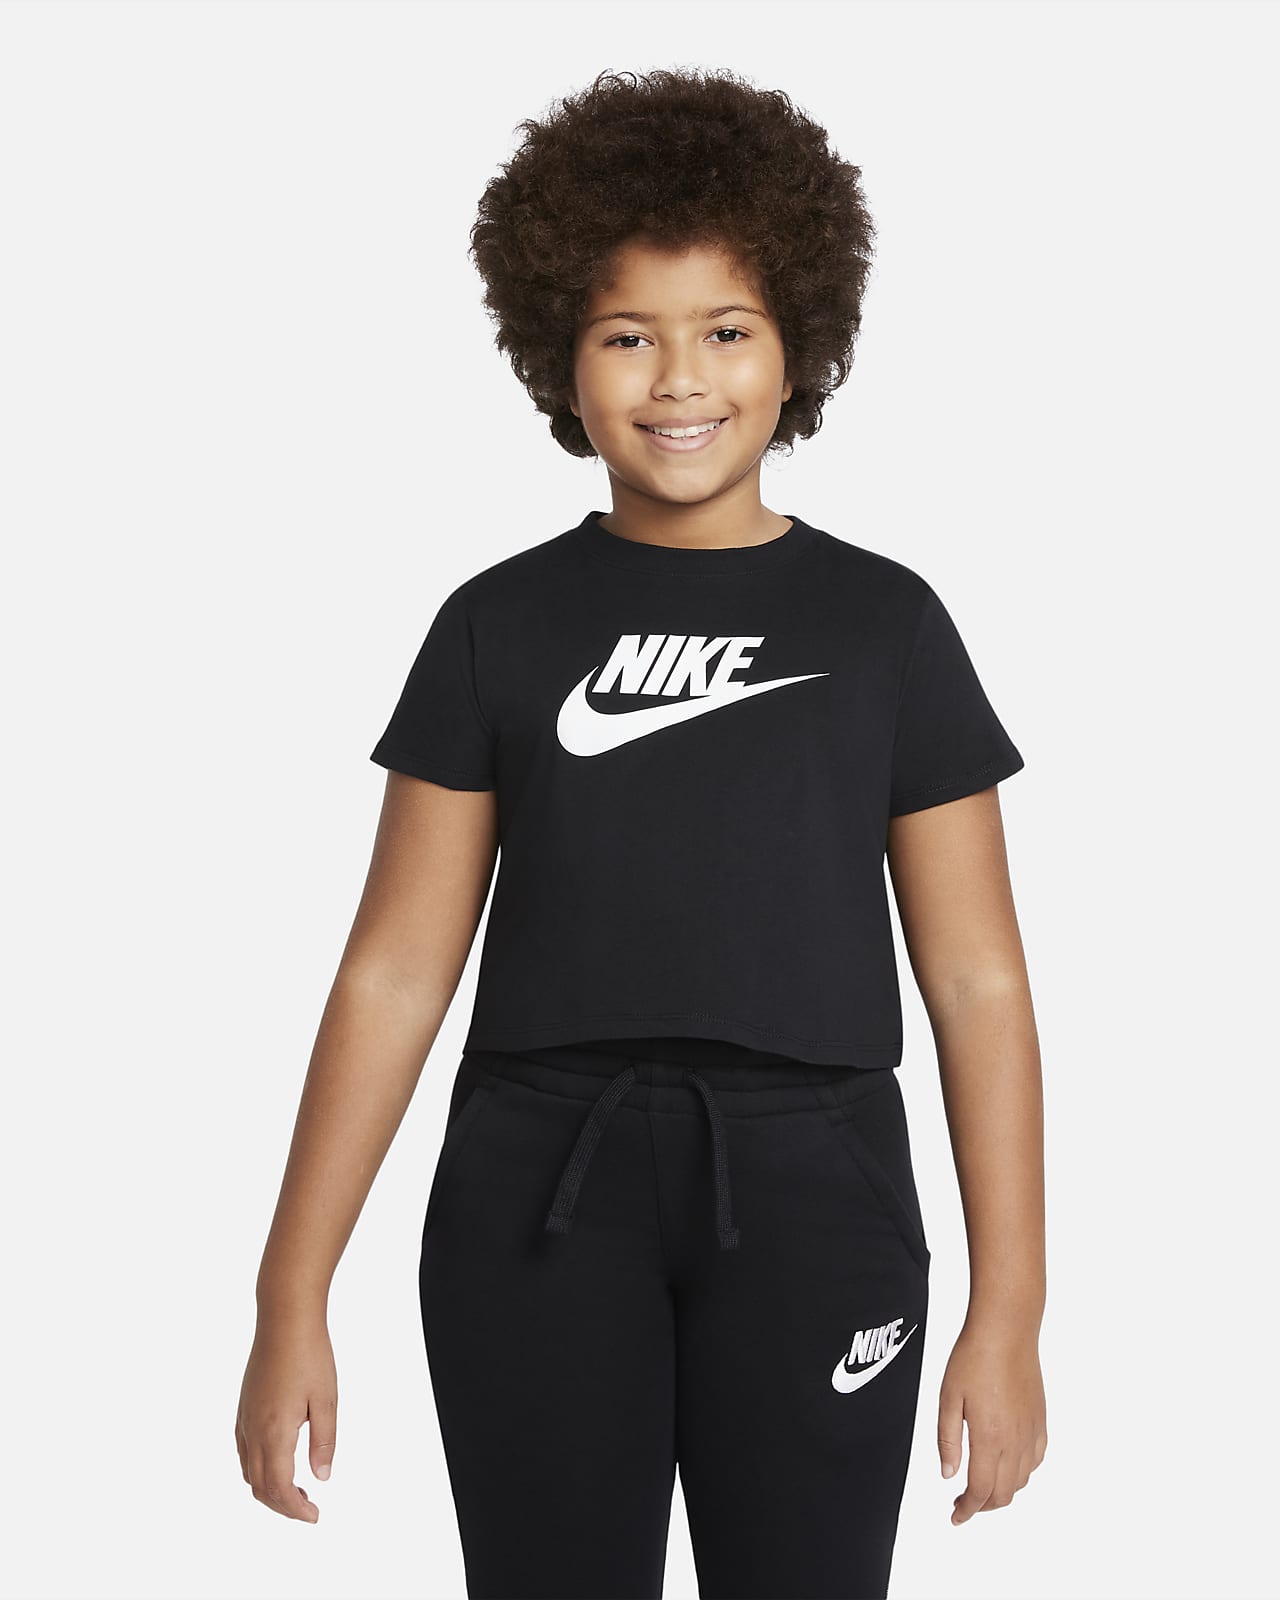 Black Nike Shirt For Girls | canoeracing.org.uk